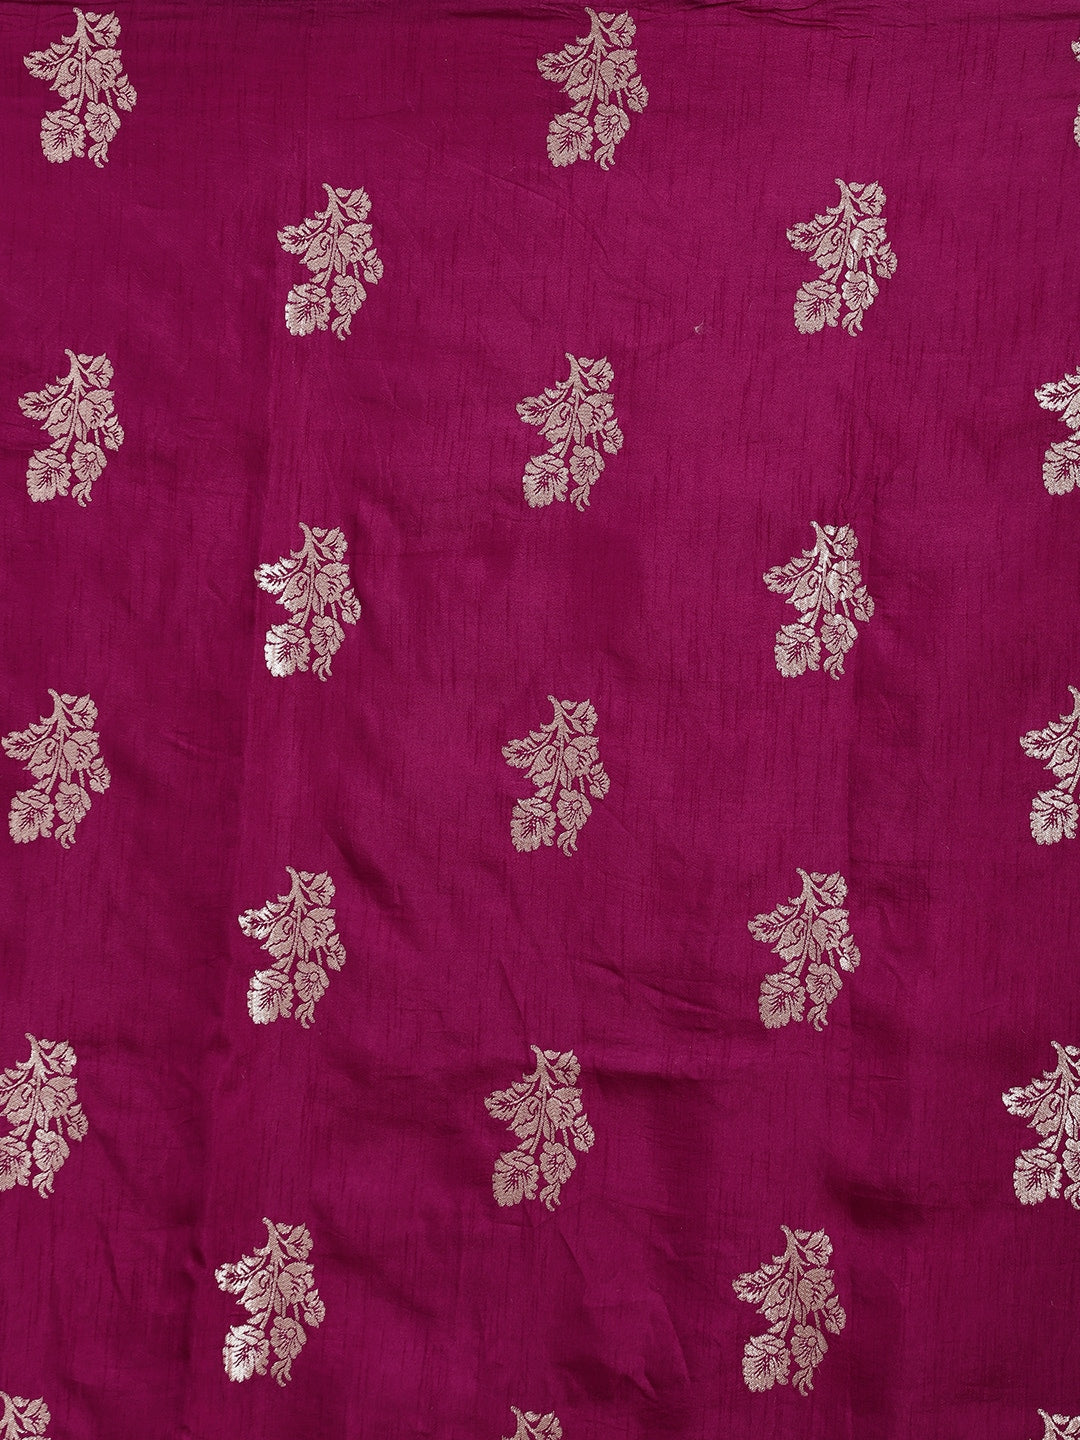 Neeru's wine color, banaras fabric saree